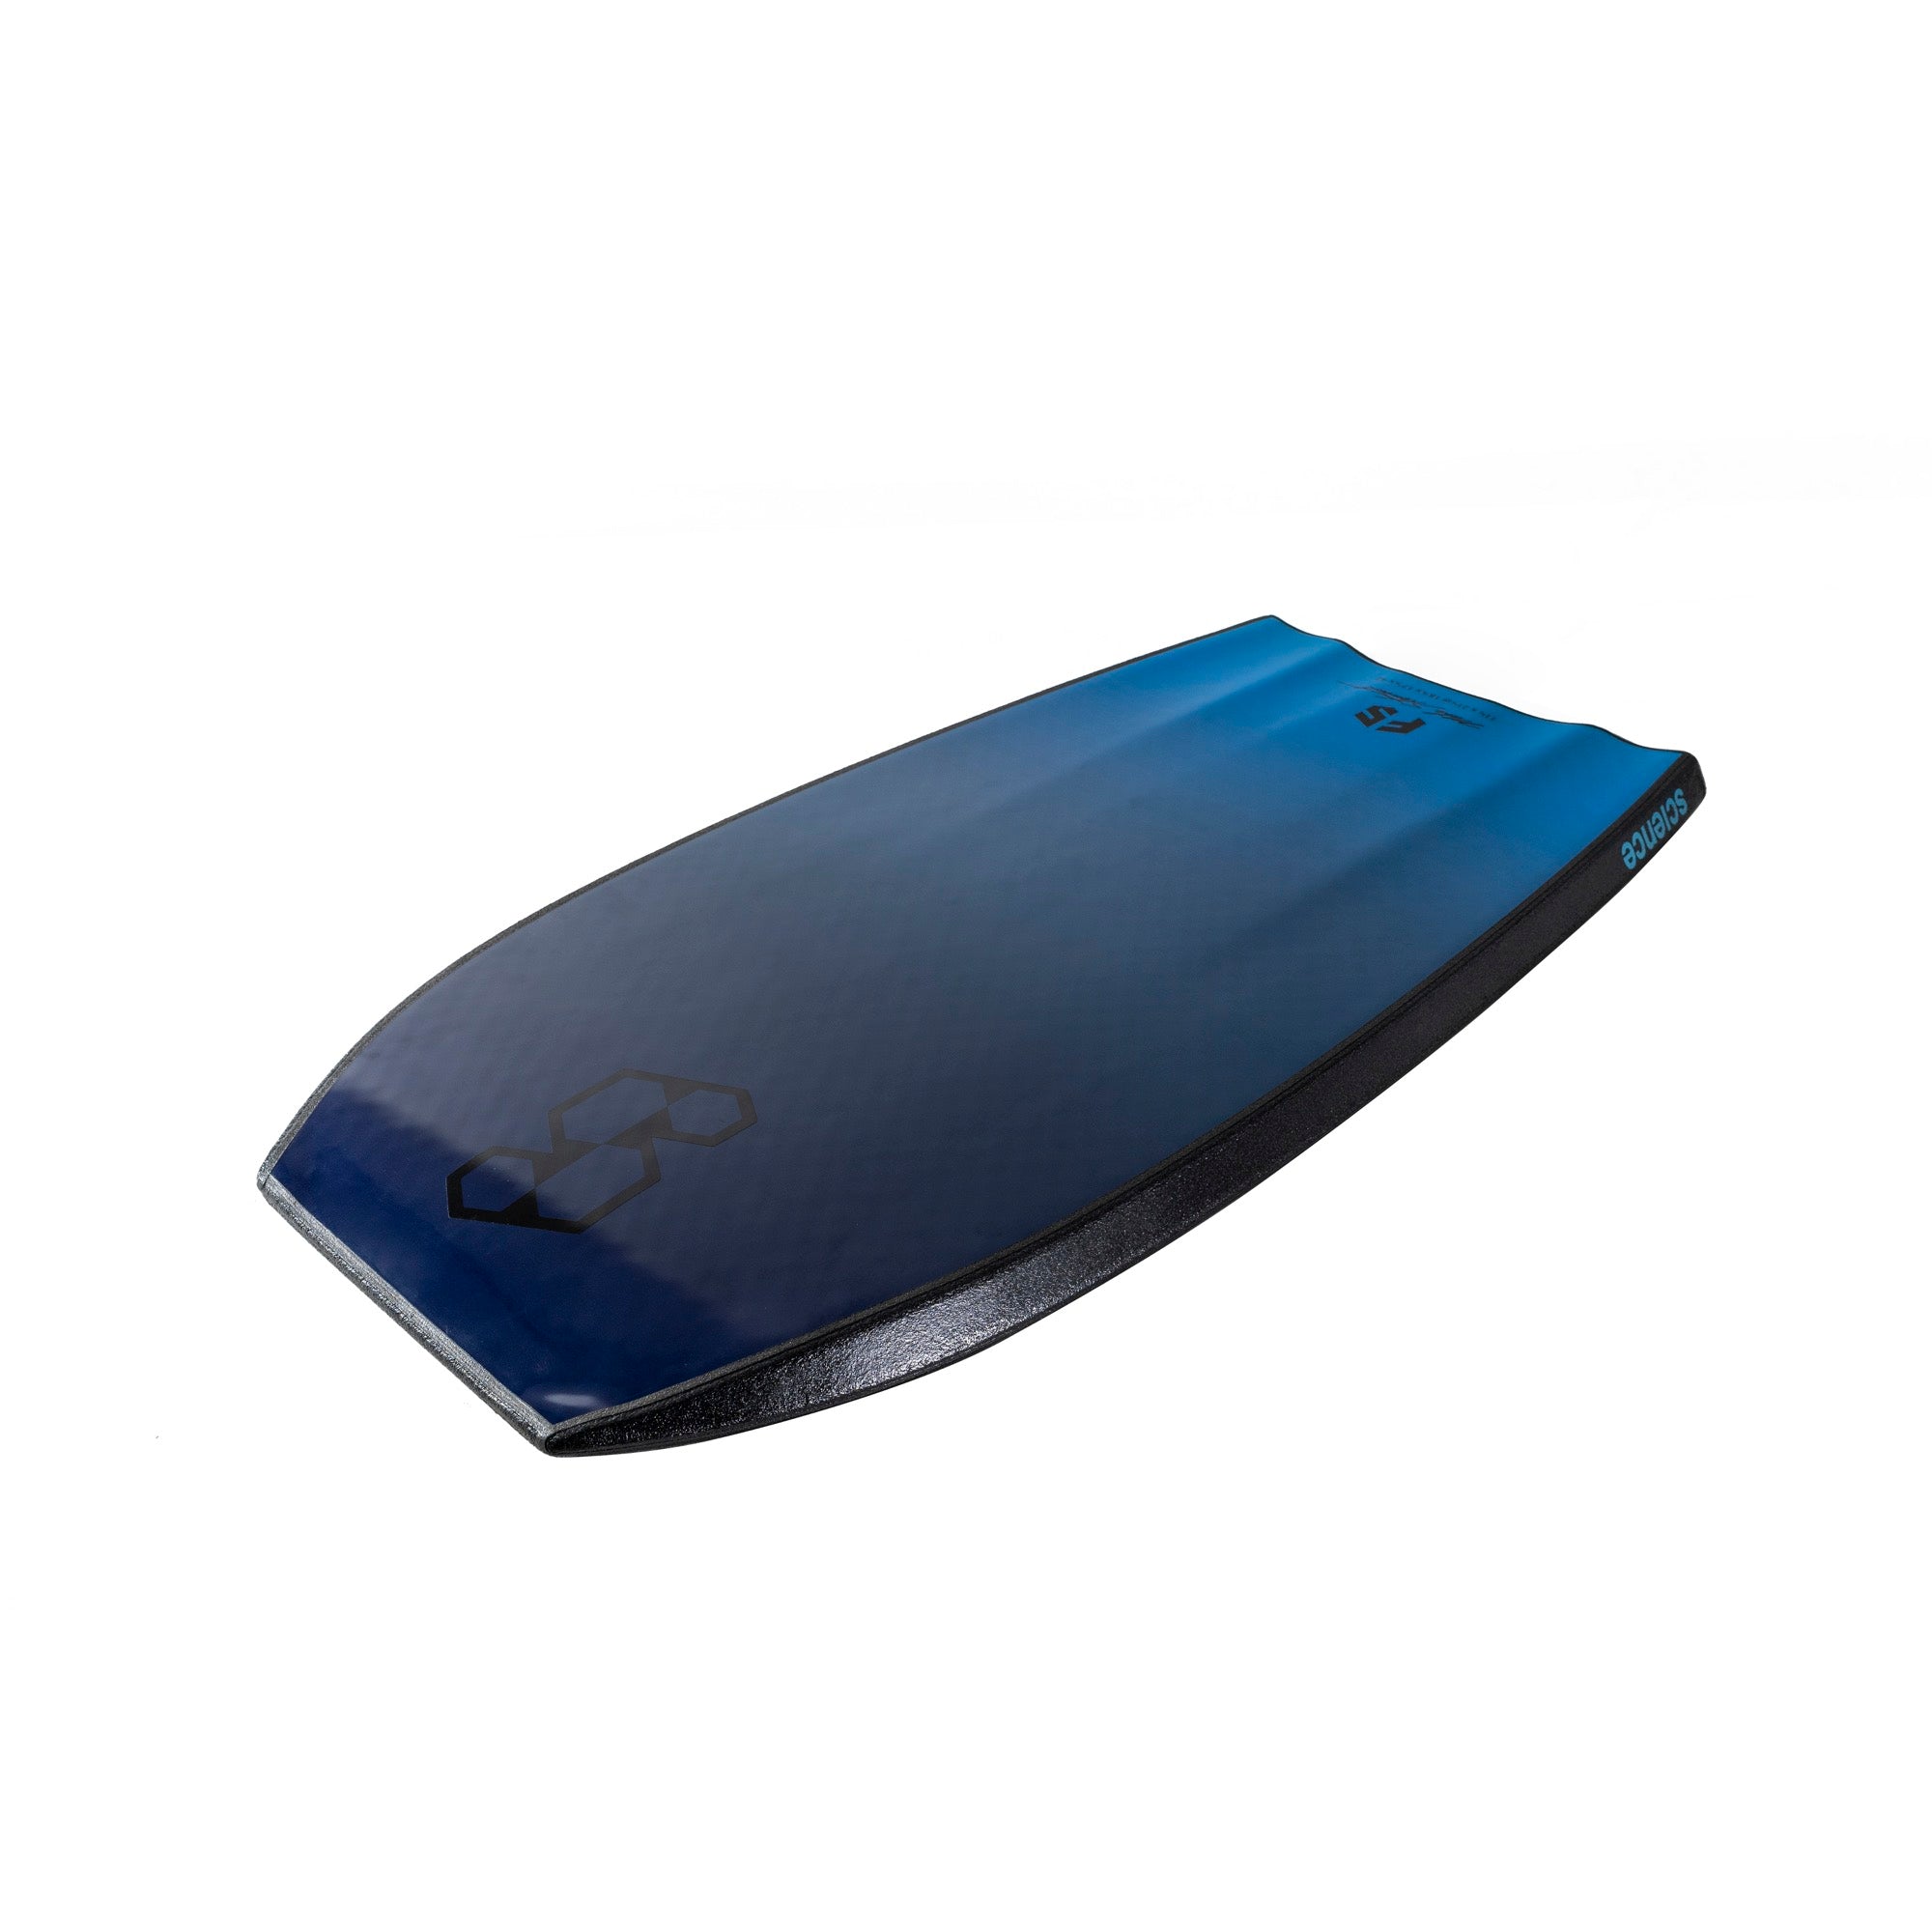 Science Bodyboard - Pro Flare Serie F5 (PP) - Tri Quad Vent - Black / Aqua